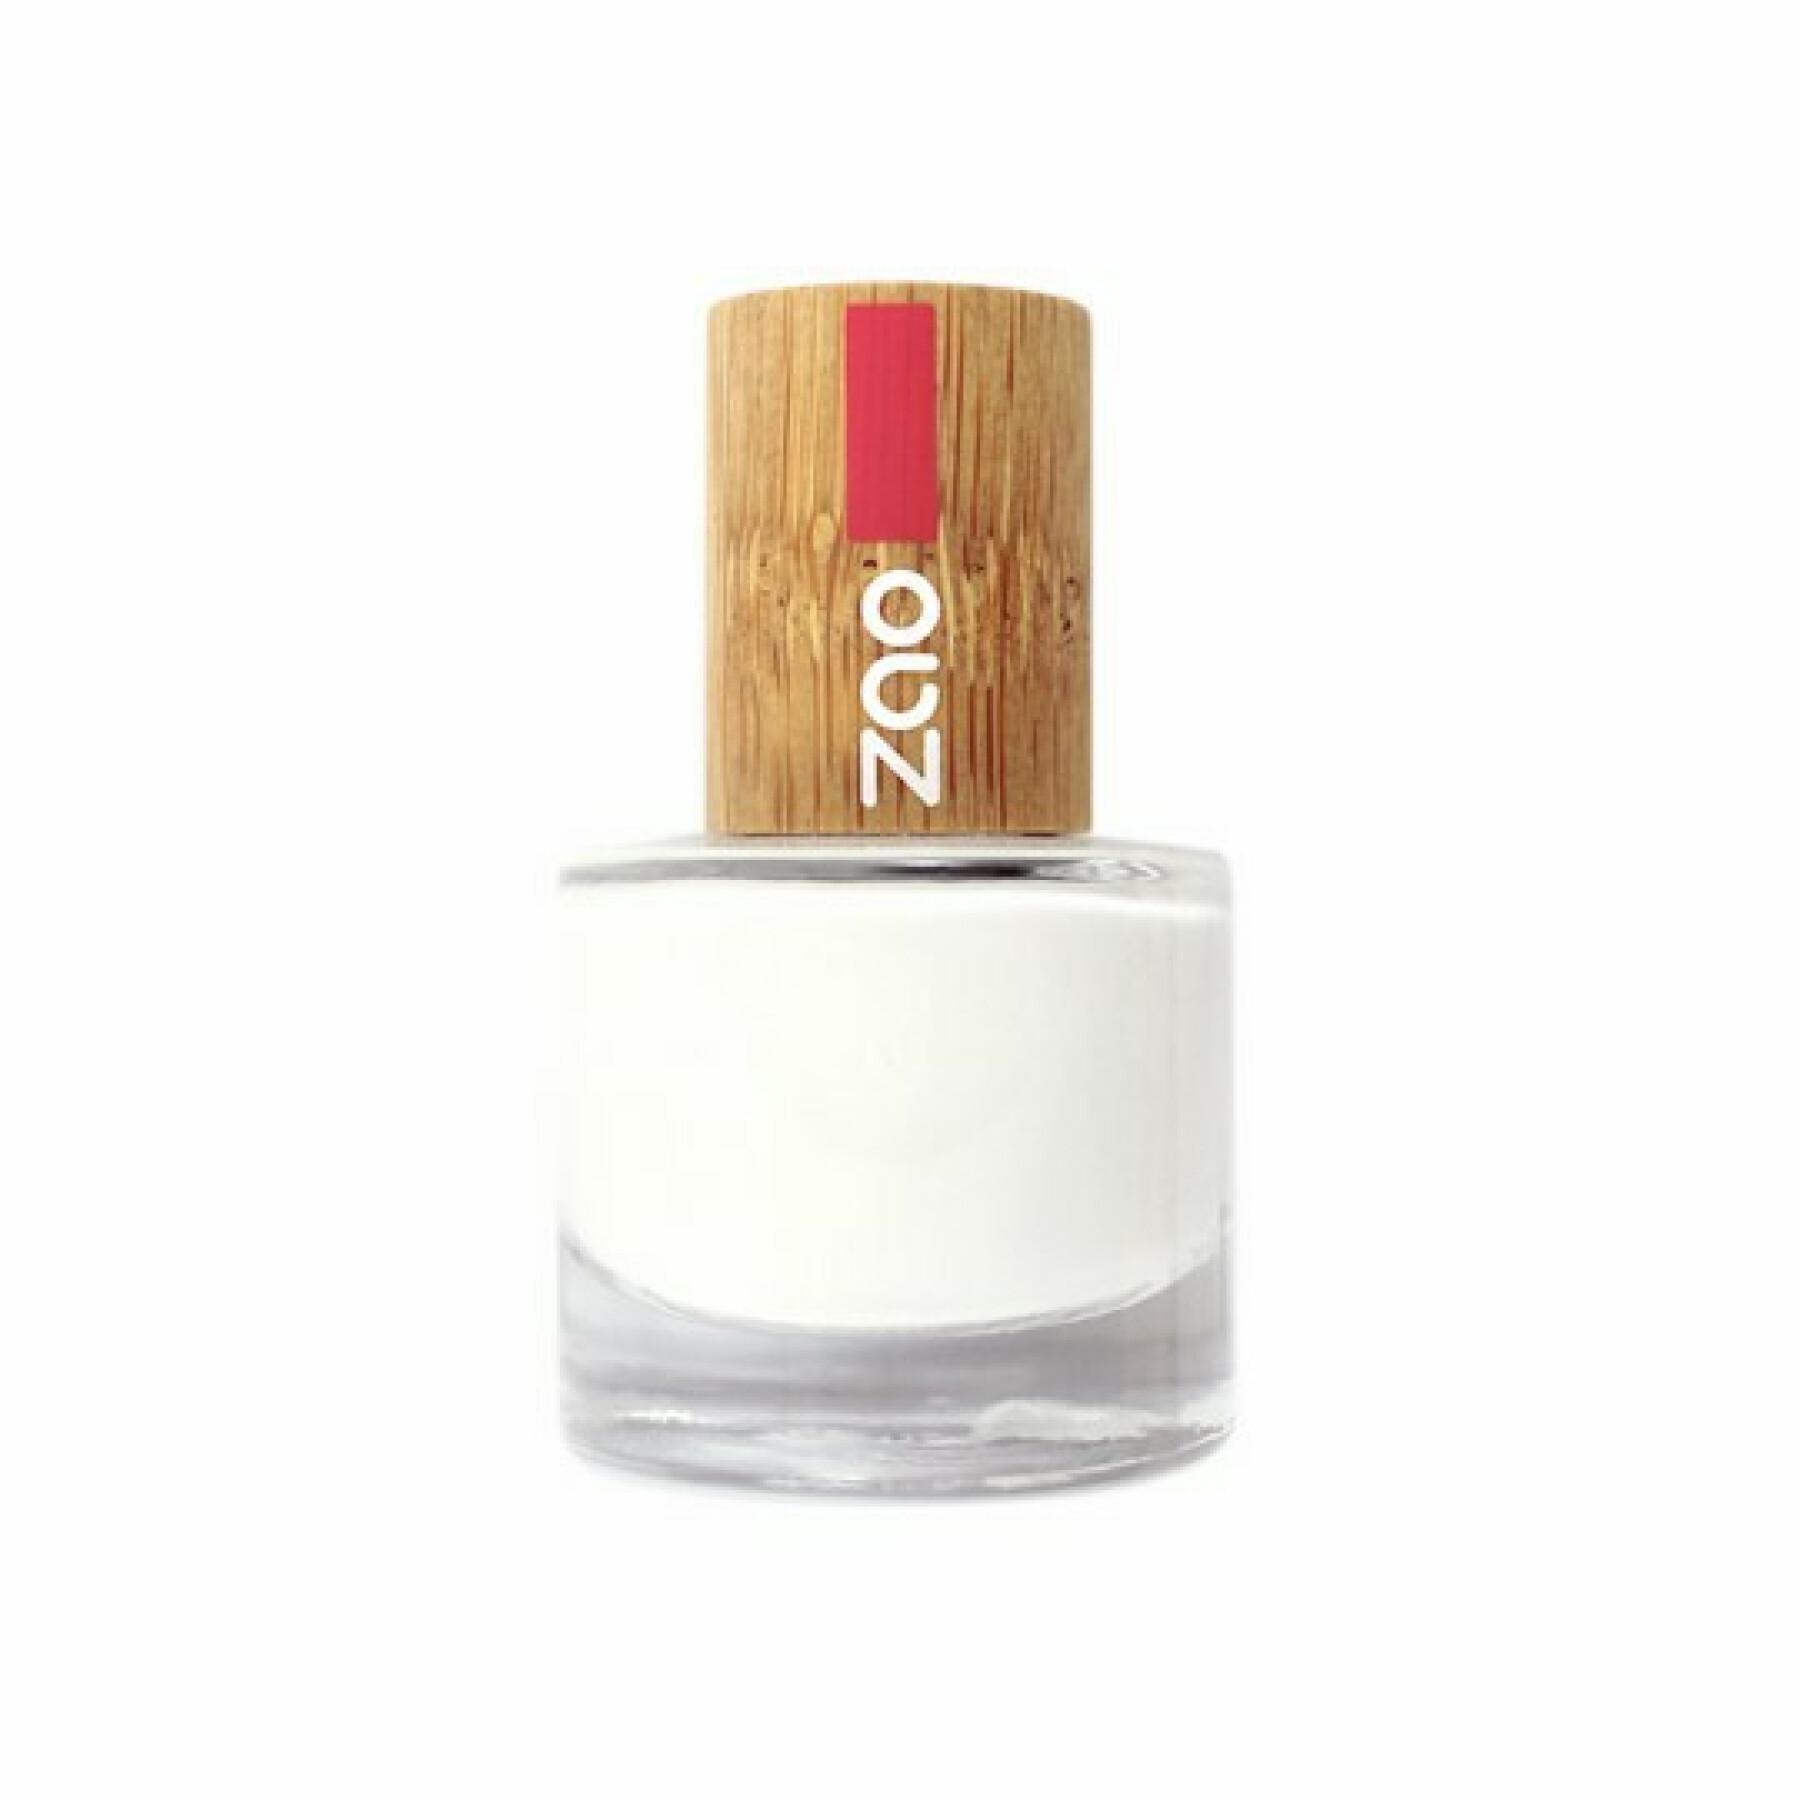 Nail polish French manicure 641 white woman Zao - 8 ml